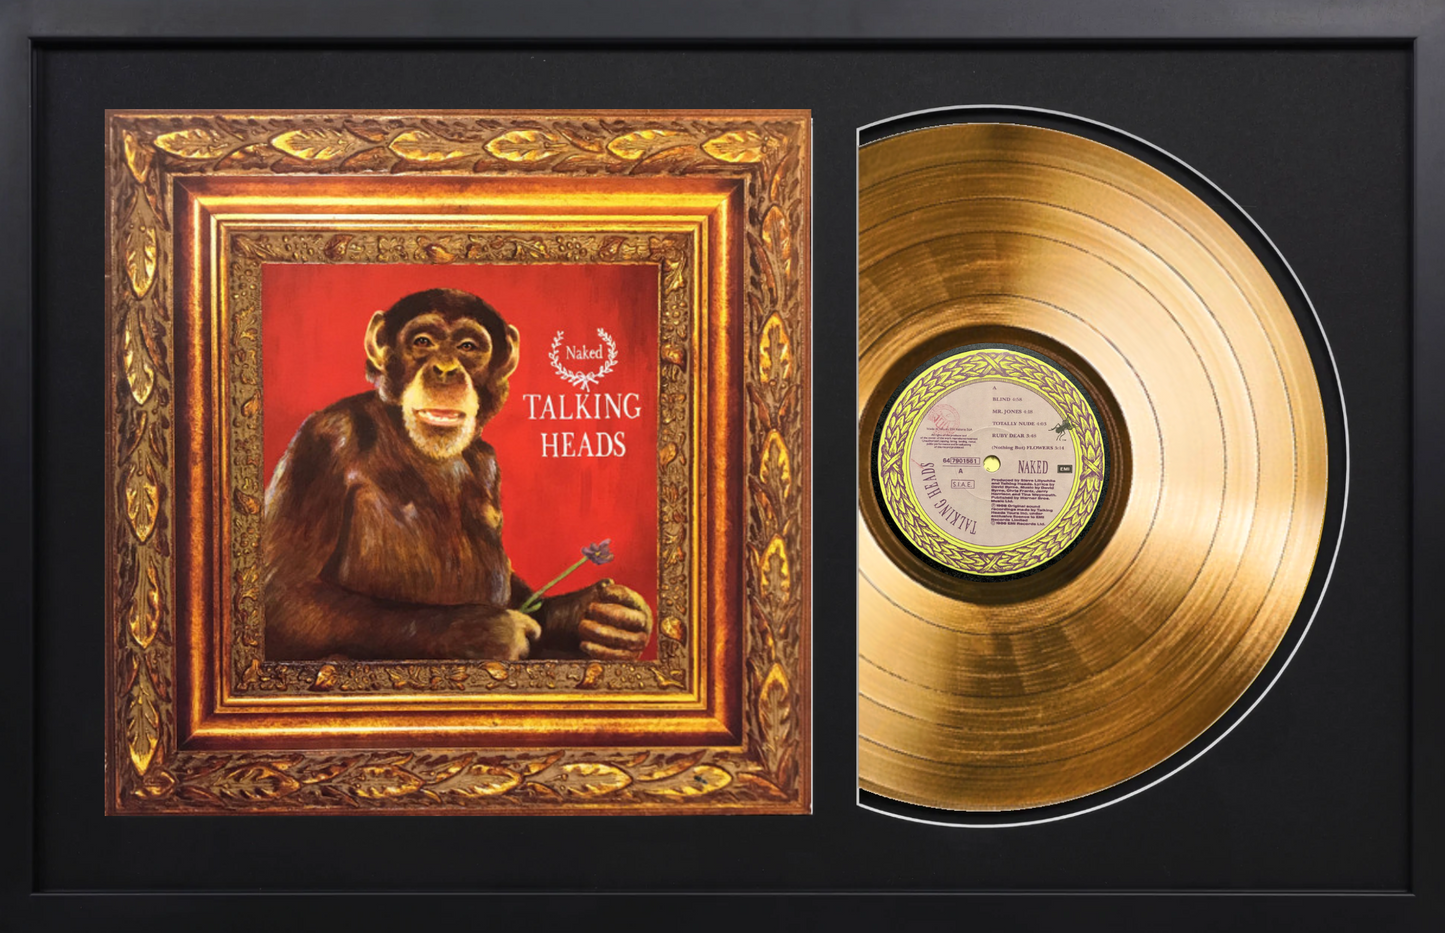 Talking Heads - Naked - 14K Gold Framed Album